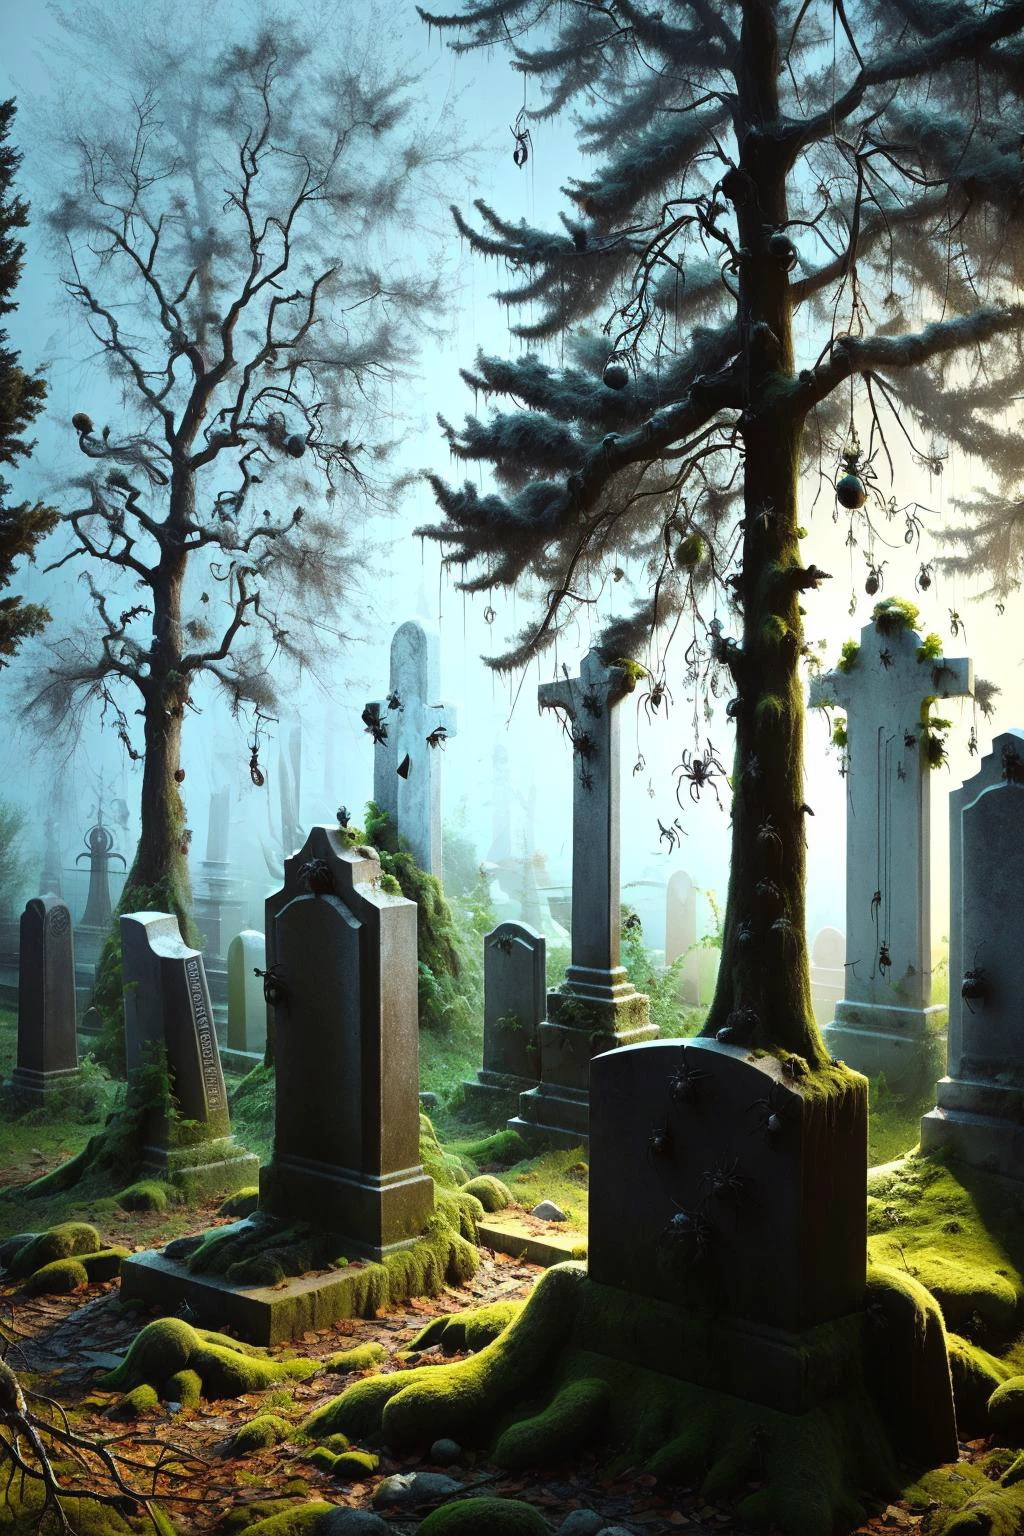 夜晚有霧的墓地, 有古老的墓碑和粗糙的樹木, ais-spiderz 爬過墳墓並掛在樹枝上, 營造出一種令人毛骨悚然、幽靈般的氛圍 